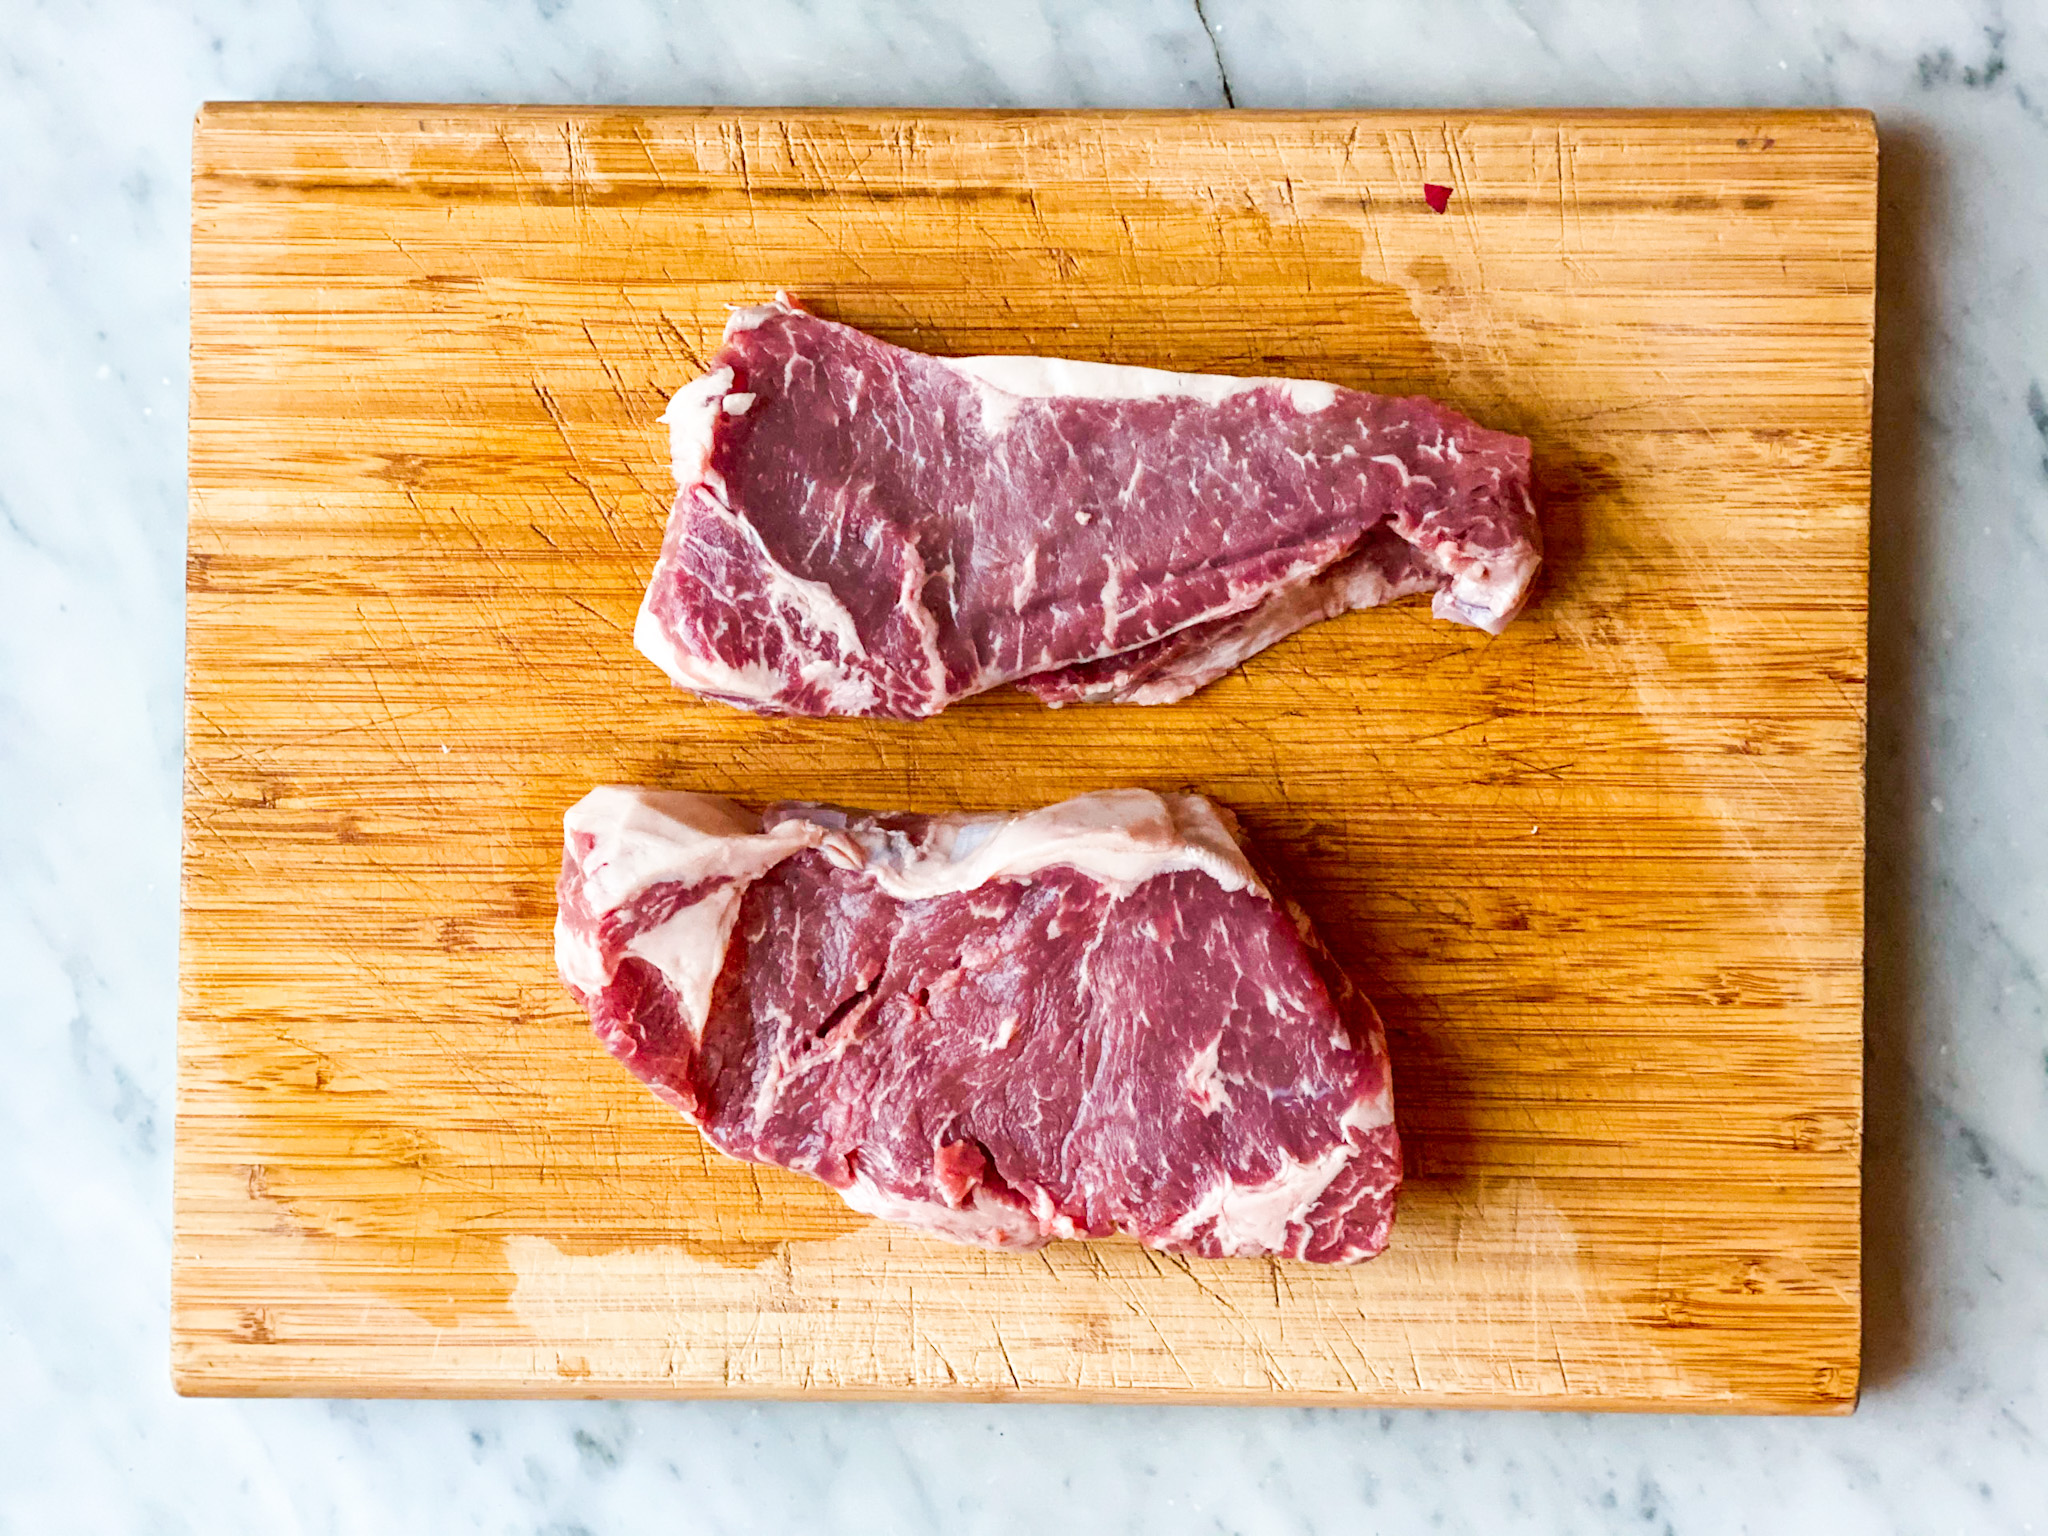 2 raw strip steaks on a cutting board.